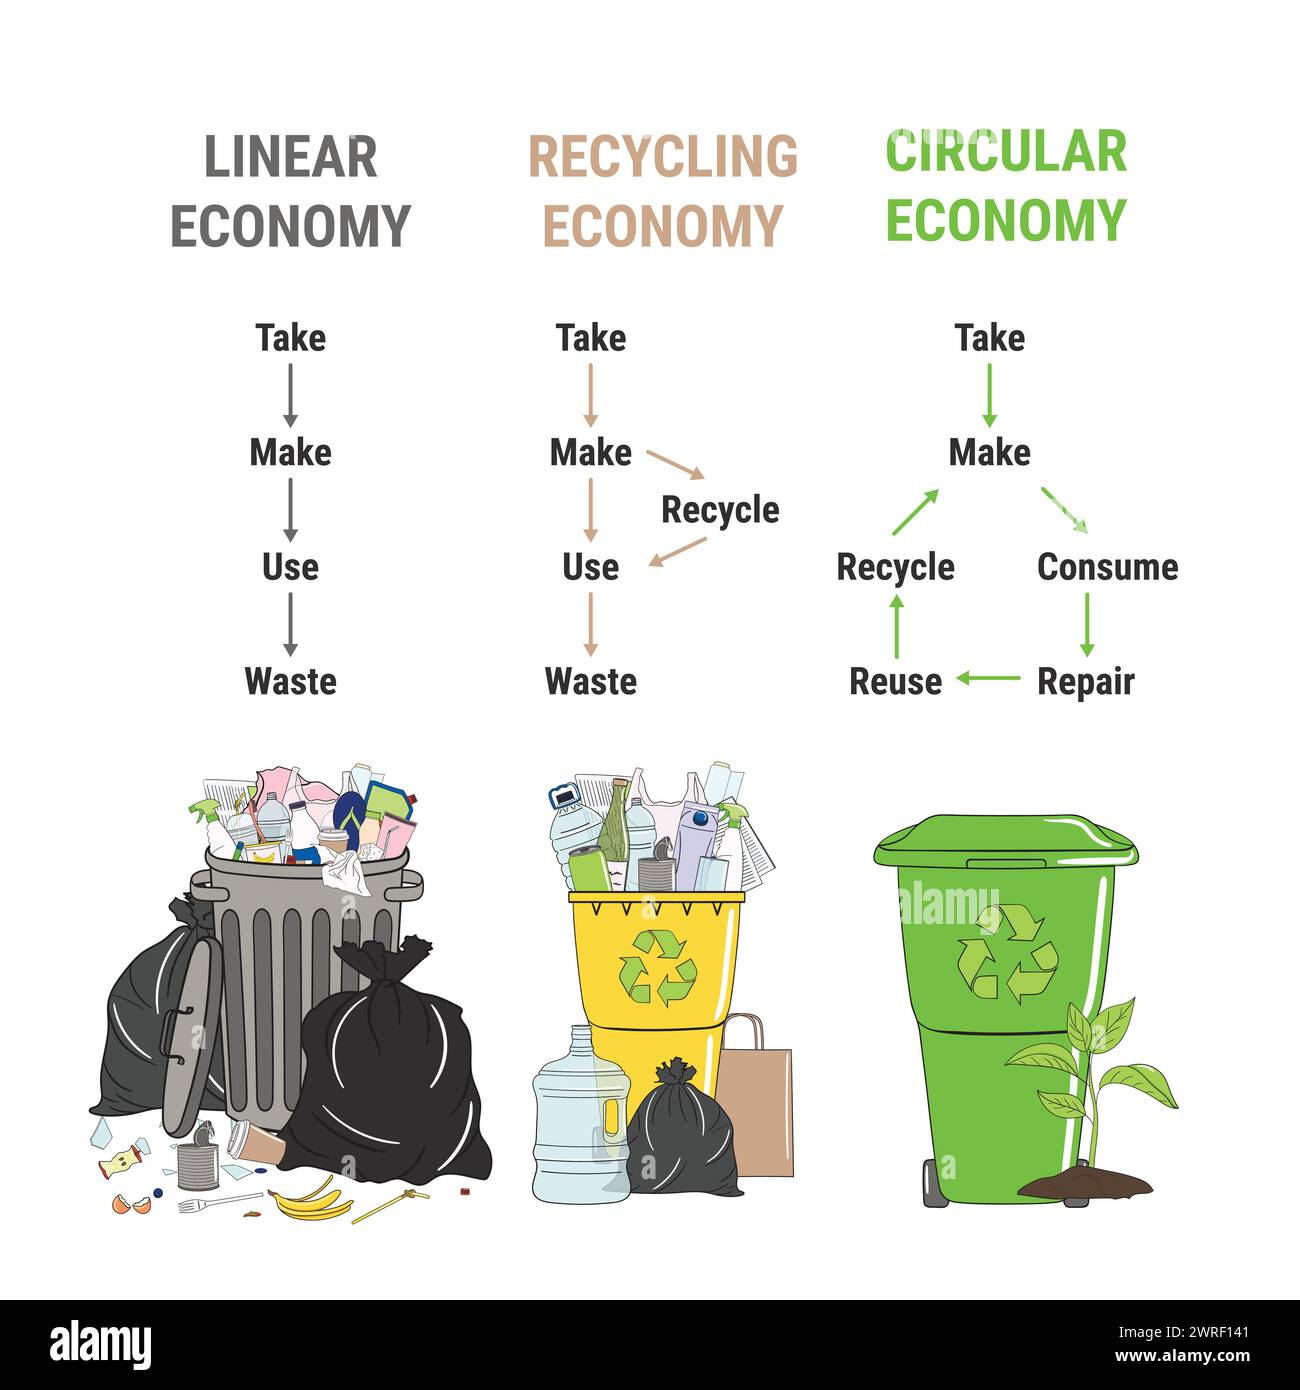 Infographie comparée de l’économie linéaire, du recyclage et de l’économie circulaire. Quantité de déchets. Schéma du cycle de vie du produit, de la matière première à la production, recyc Illustration de Vecteur